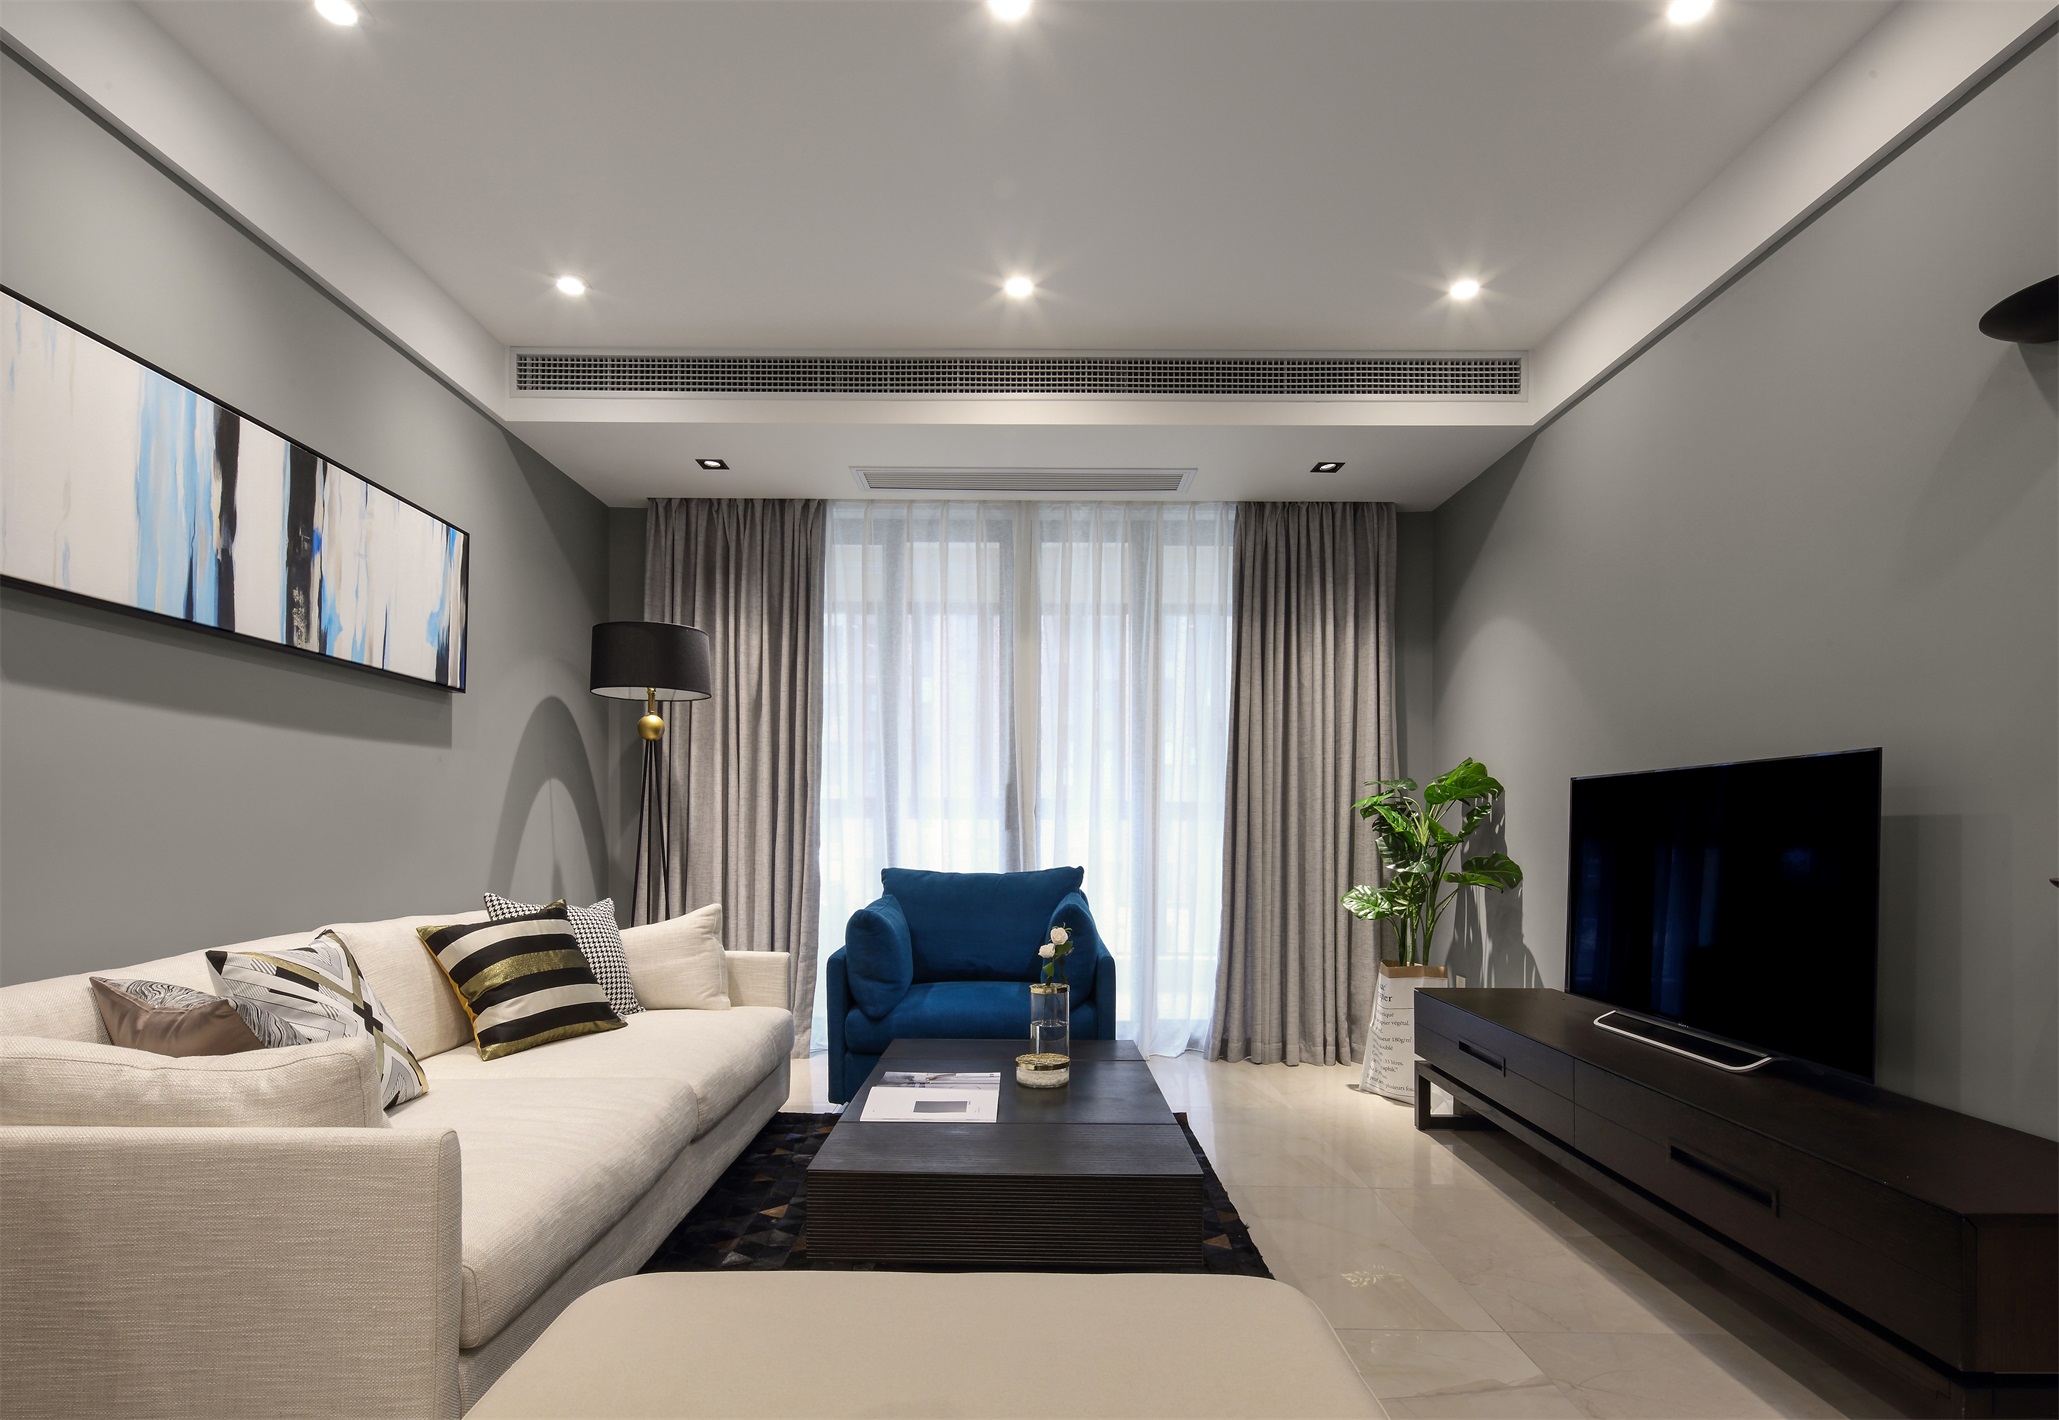 浅白色的沙发轻奢时尚，亮色装饰画结合灰色背景墙，营造出一个特色鲜明的客厅空间。